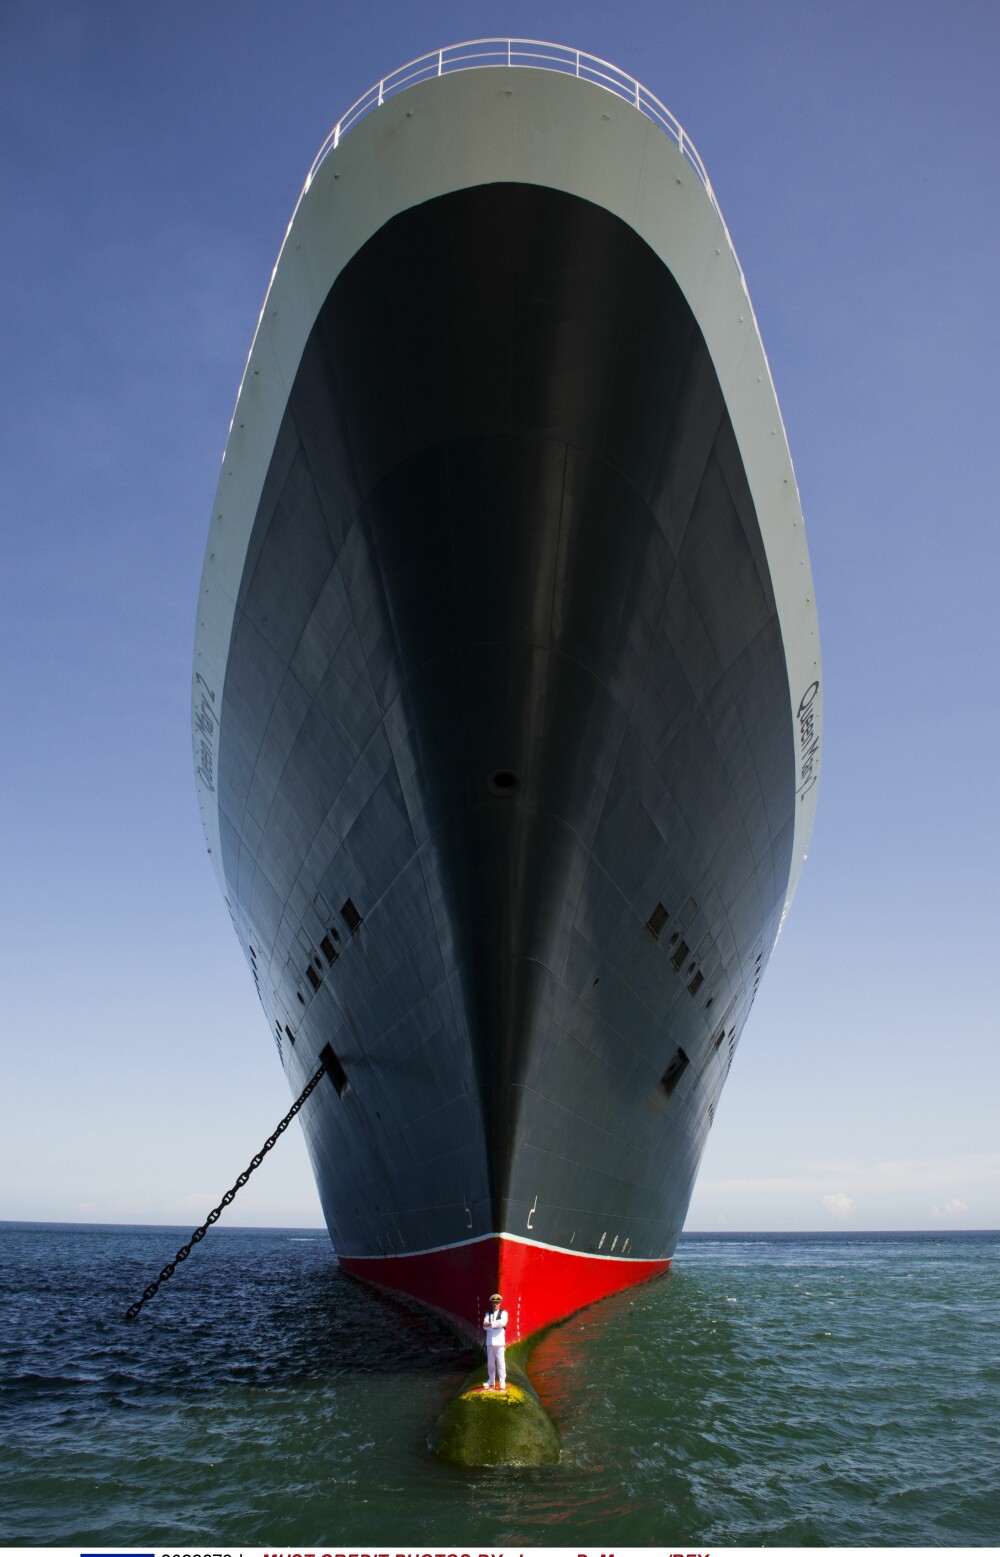 Imagini inedite cu comandantul celui mai mare vas de croaziera din lume. Unde s-a fotografiat capitanul vasului Queen Mary 2 - Imaginea 2